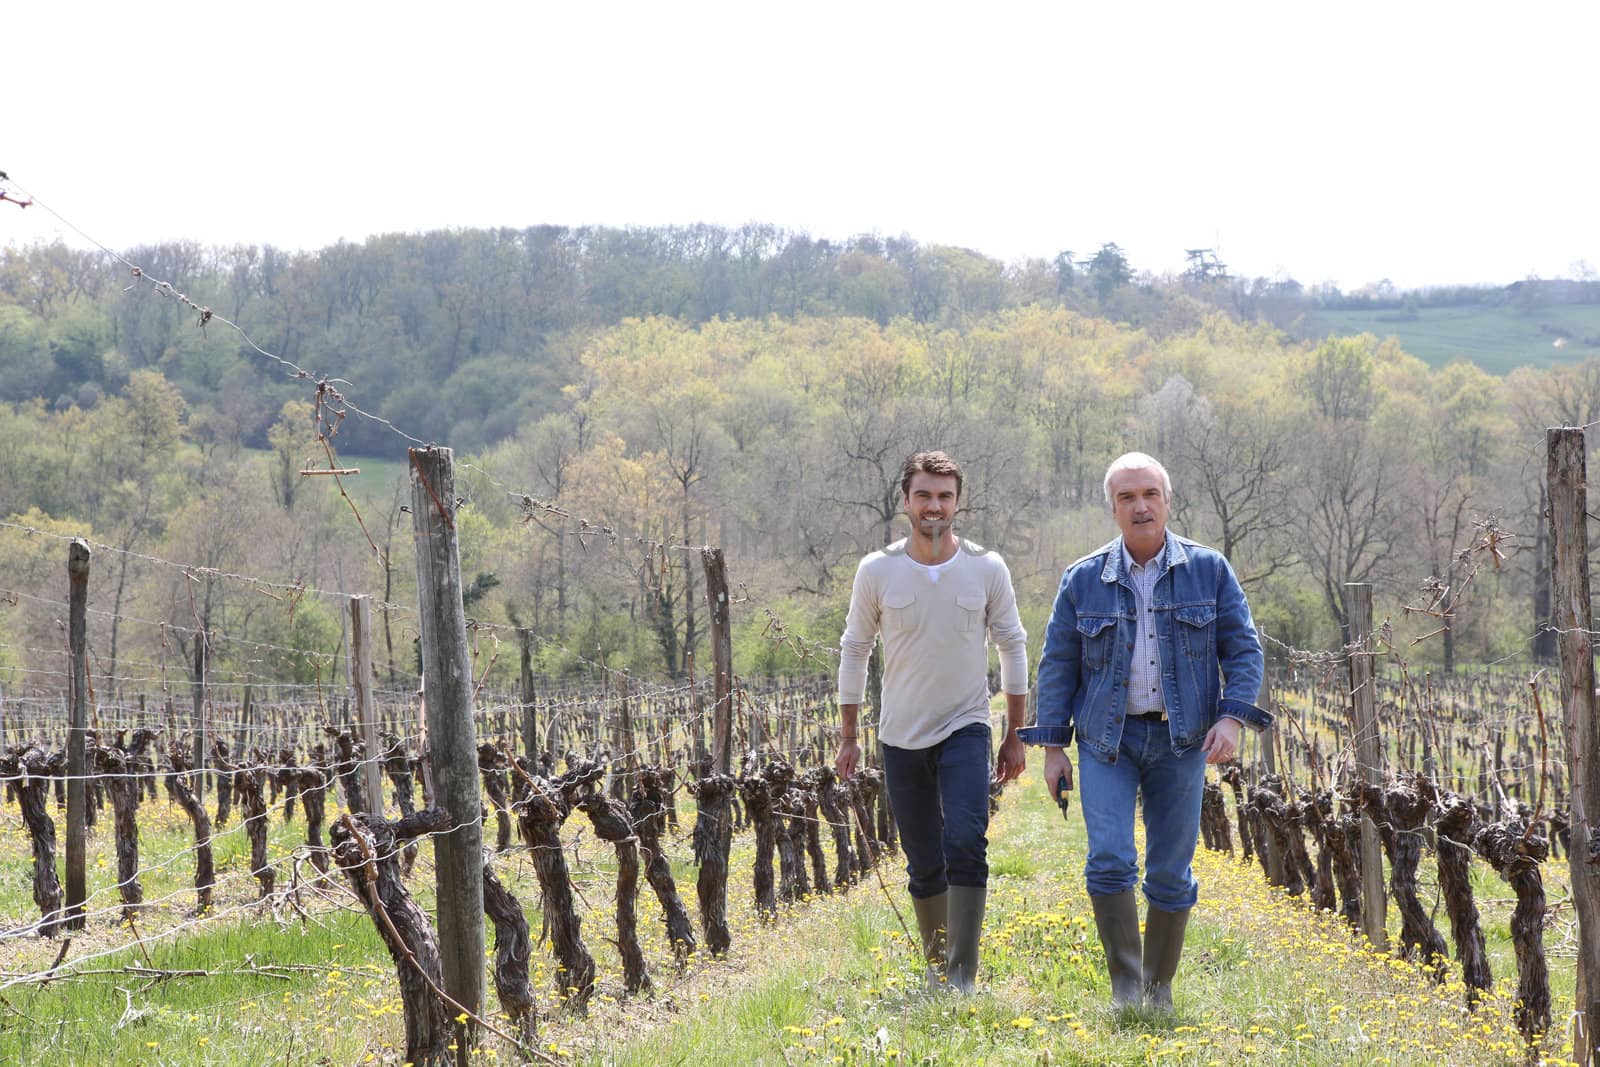 Two men walking through vineyard by phovoir